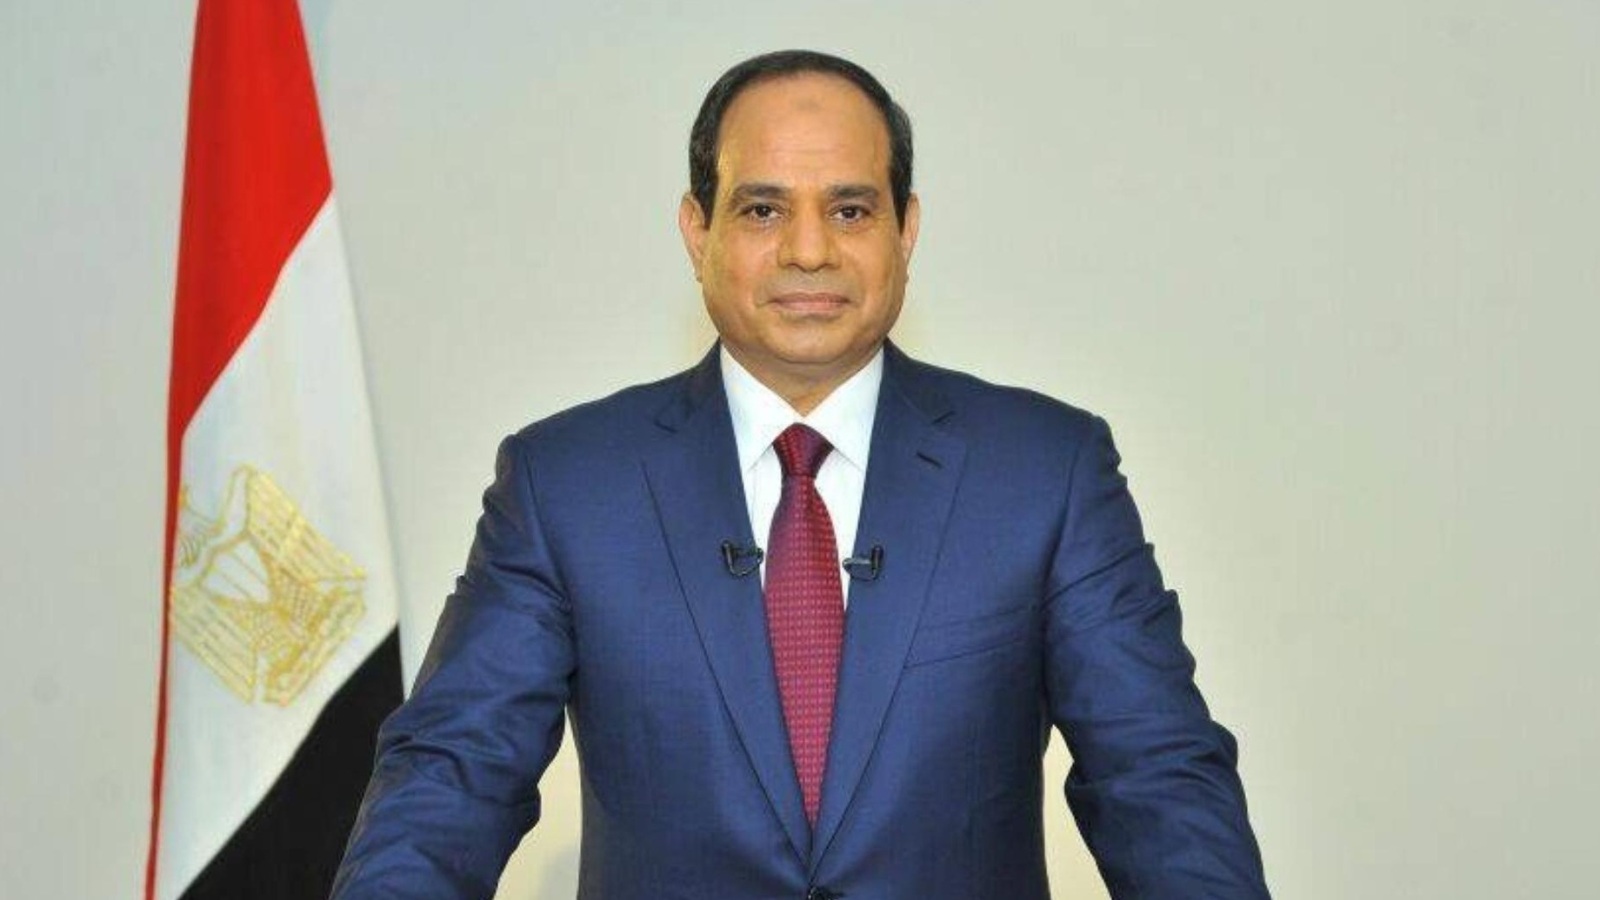 رسميًا.. الرئيس المصري “السيسي” يعلن ترشحه لفترة رئاسية ثانية